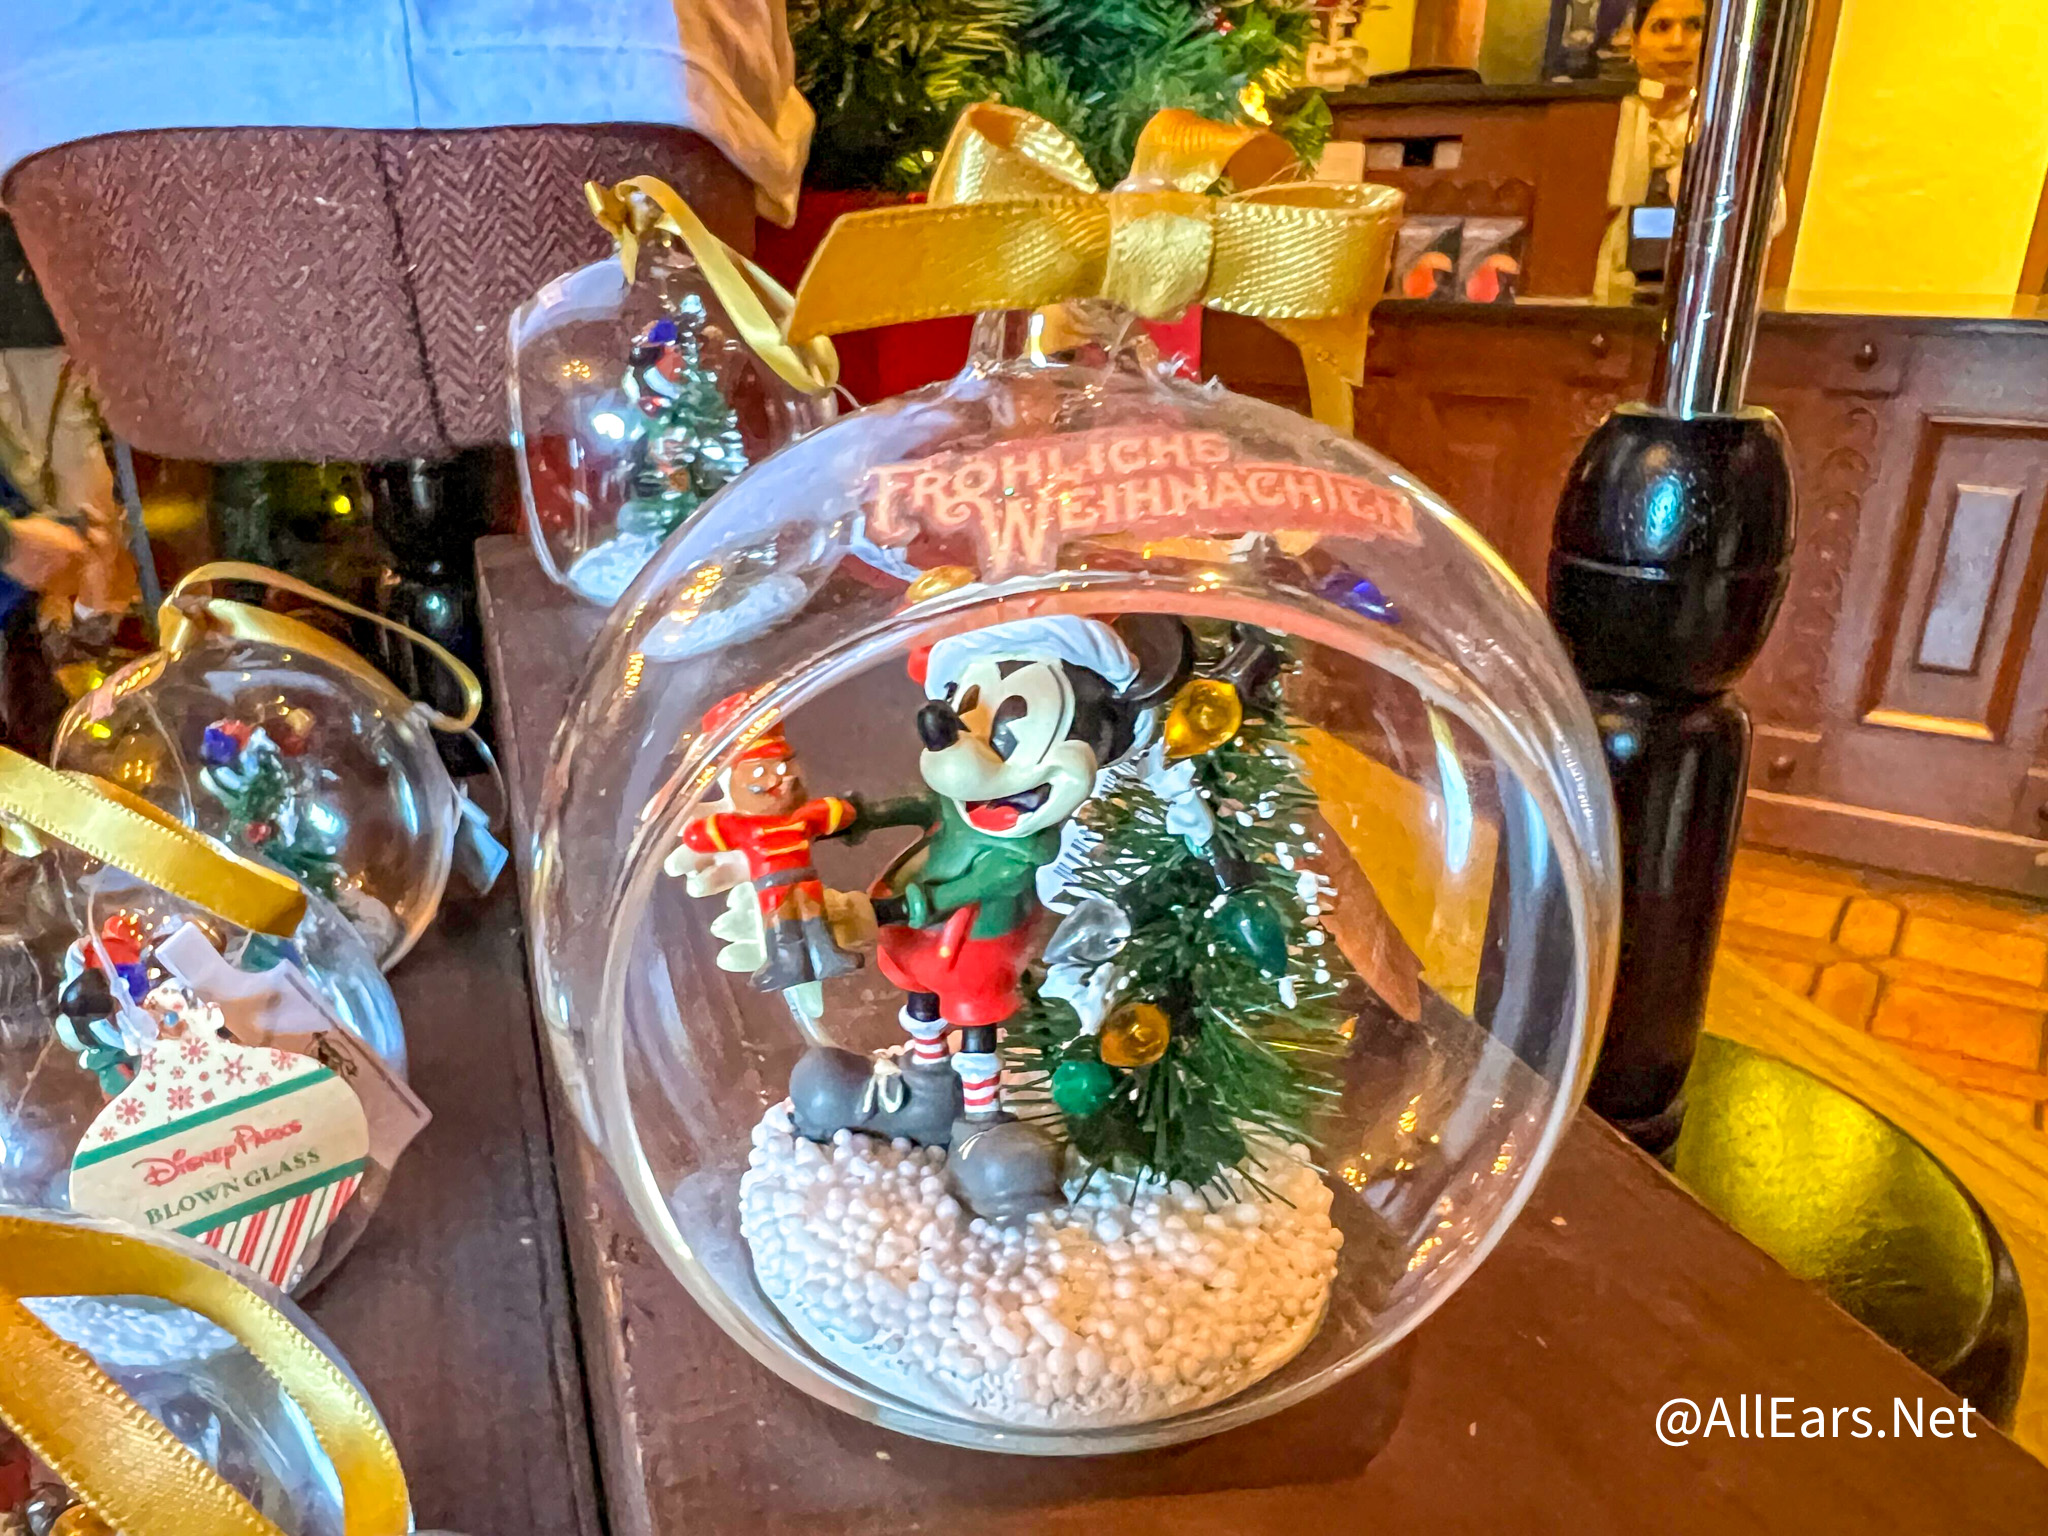 Disney Sketchbook Ornament - Santa Minnie Glass Dome